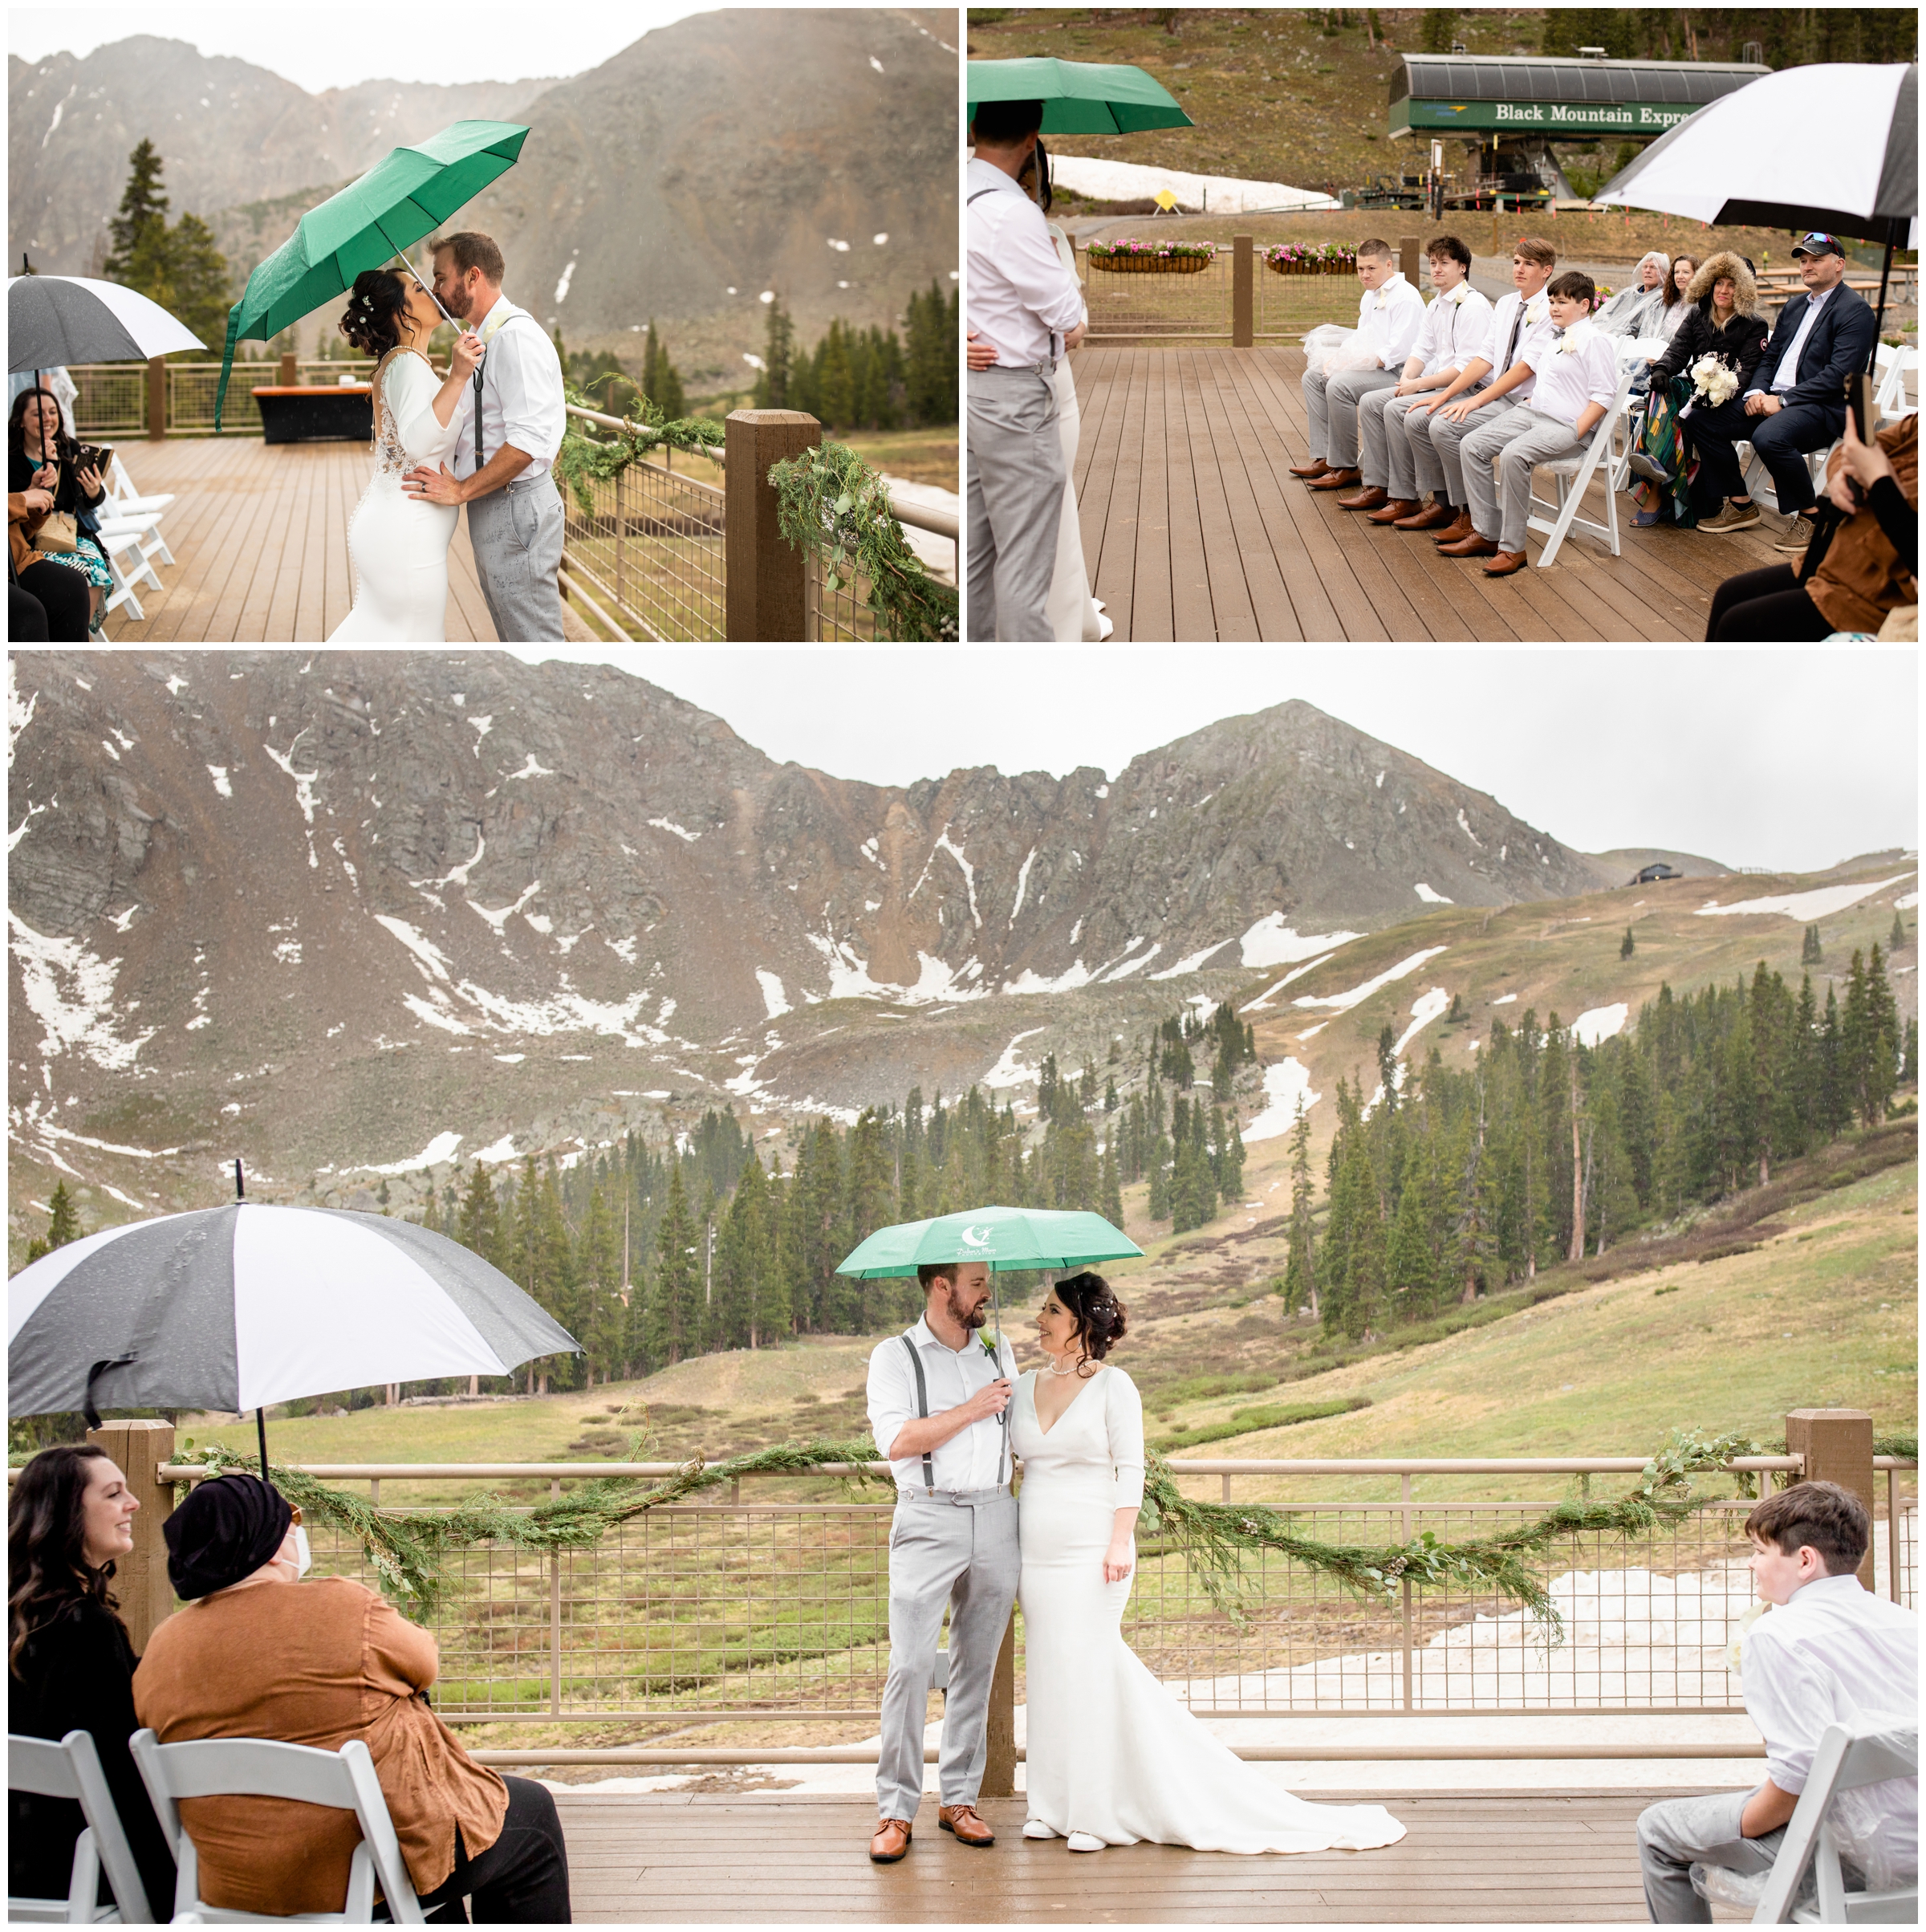 rainy Colorado wedding ceremony at Black Mountain Lodge at Arapahoe Basin 